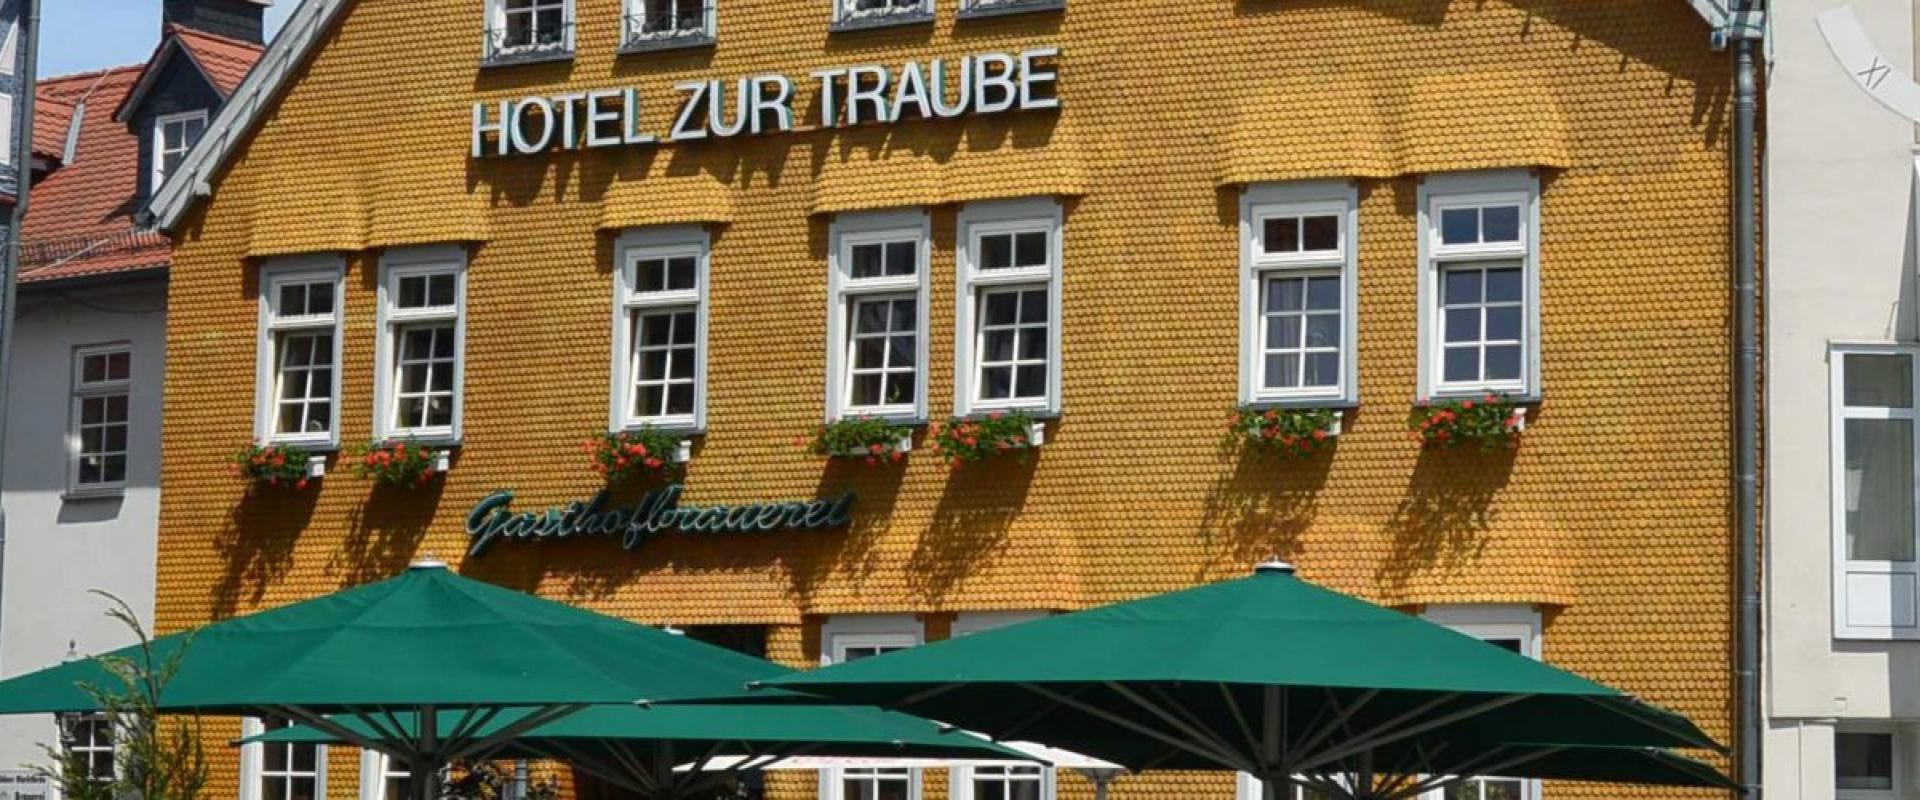 21456 Biker Hotel Zur Traube im Spessart/Vogelsberg.jpg